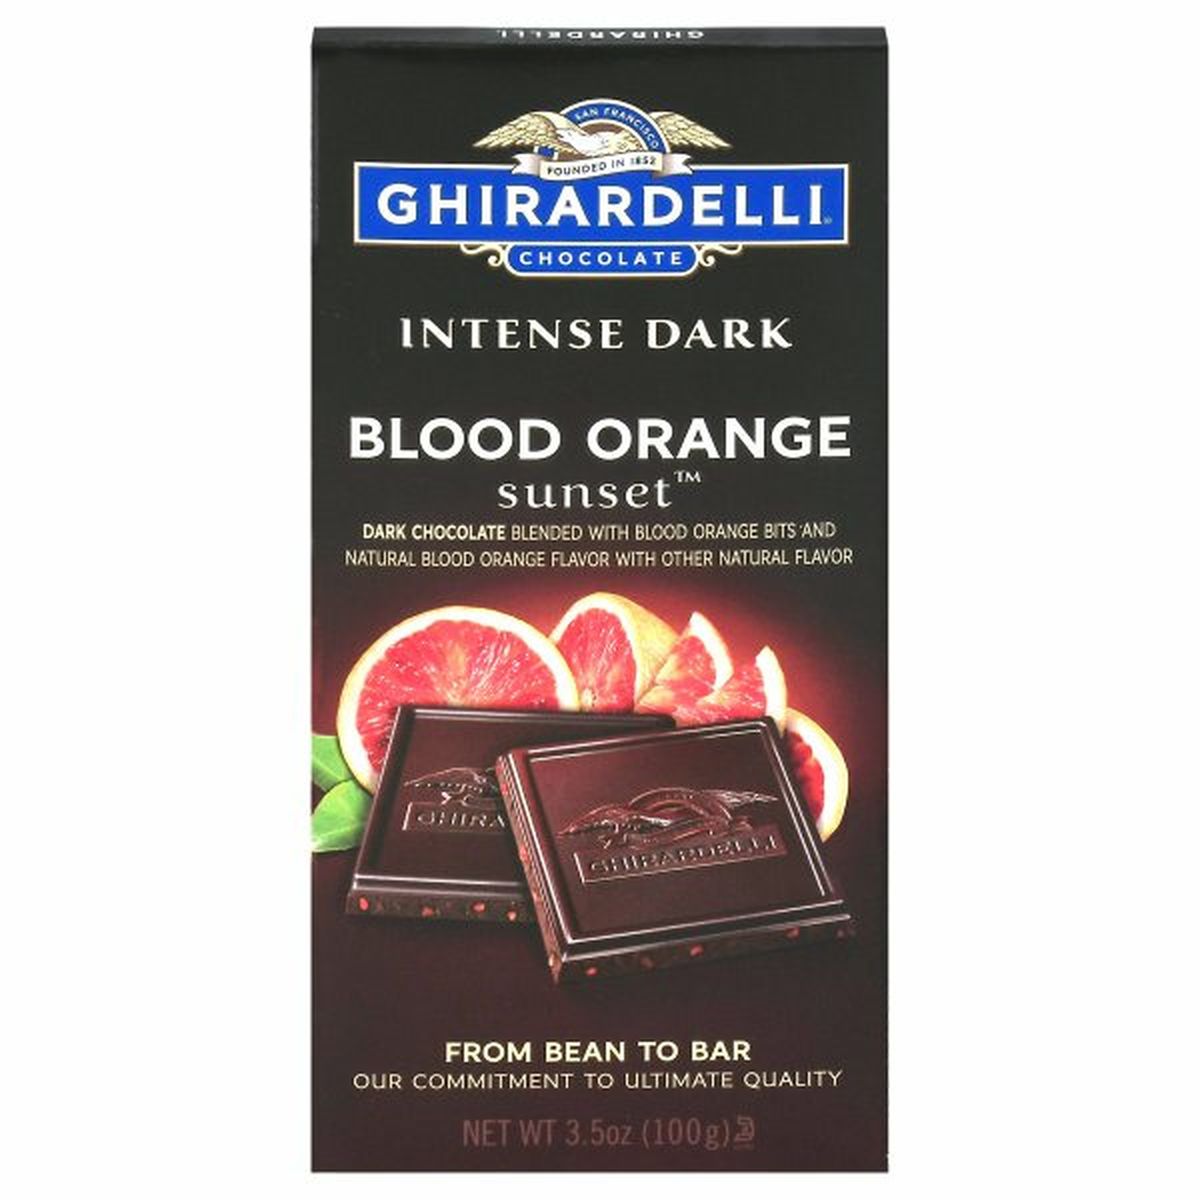 Calories in Ghirardelli Intense Dark Dark Chocolate, Blood Orange Sunset